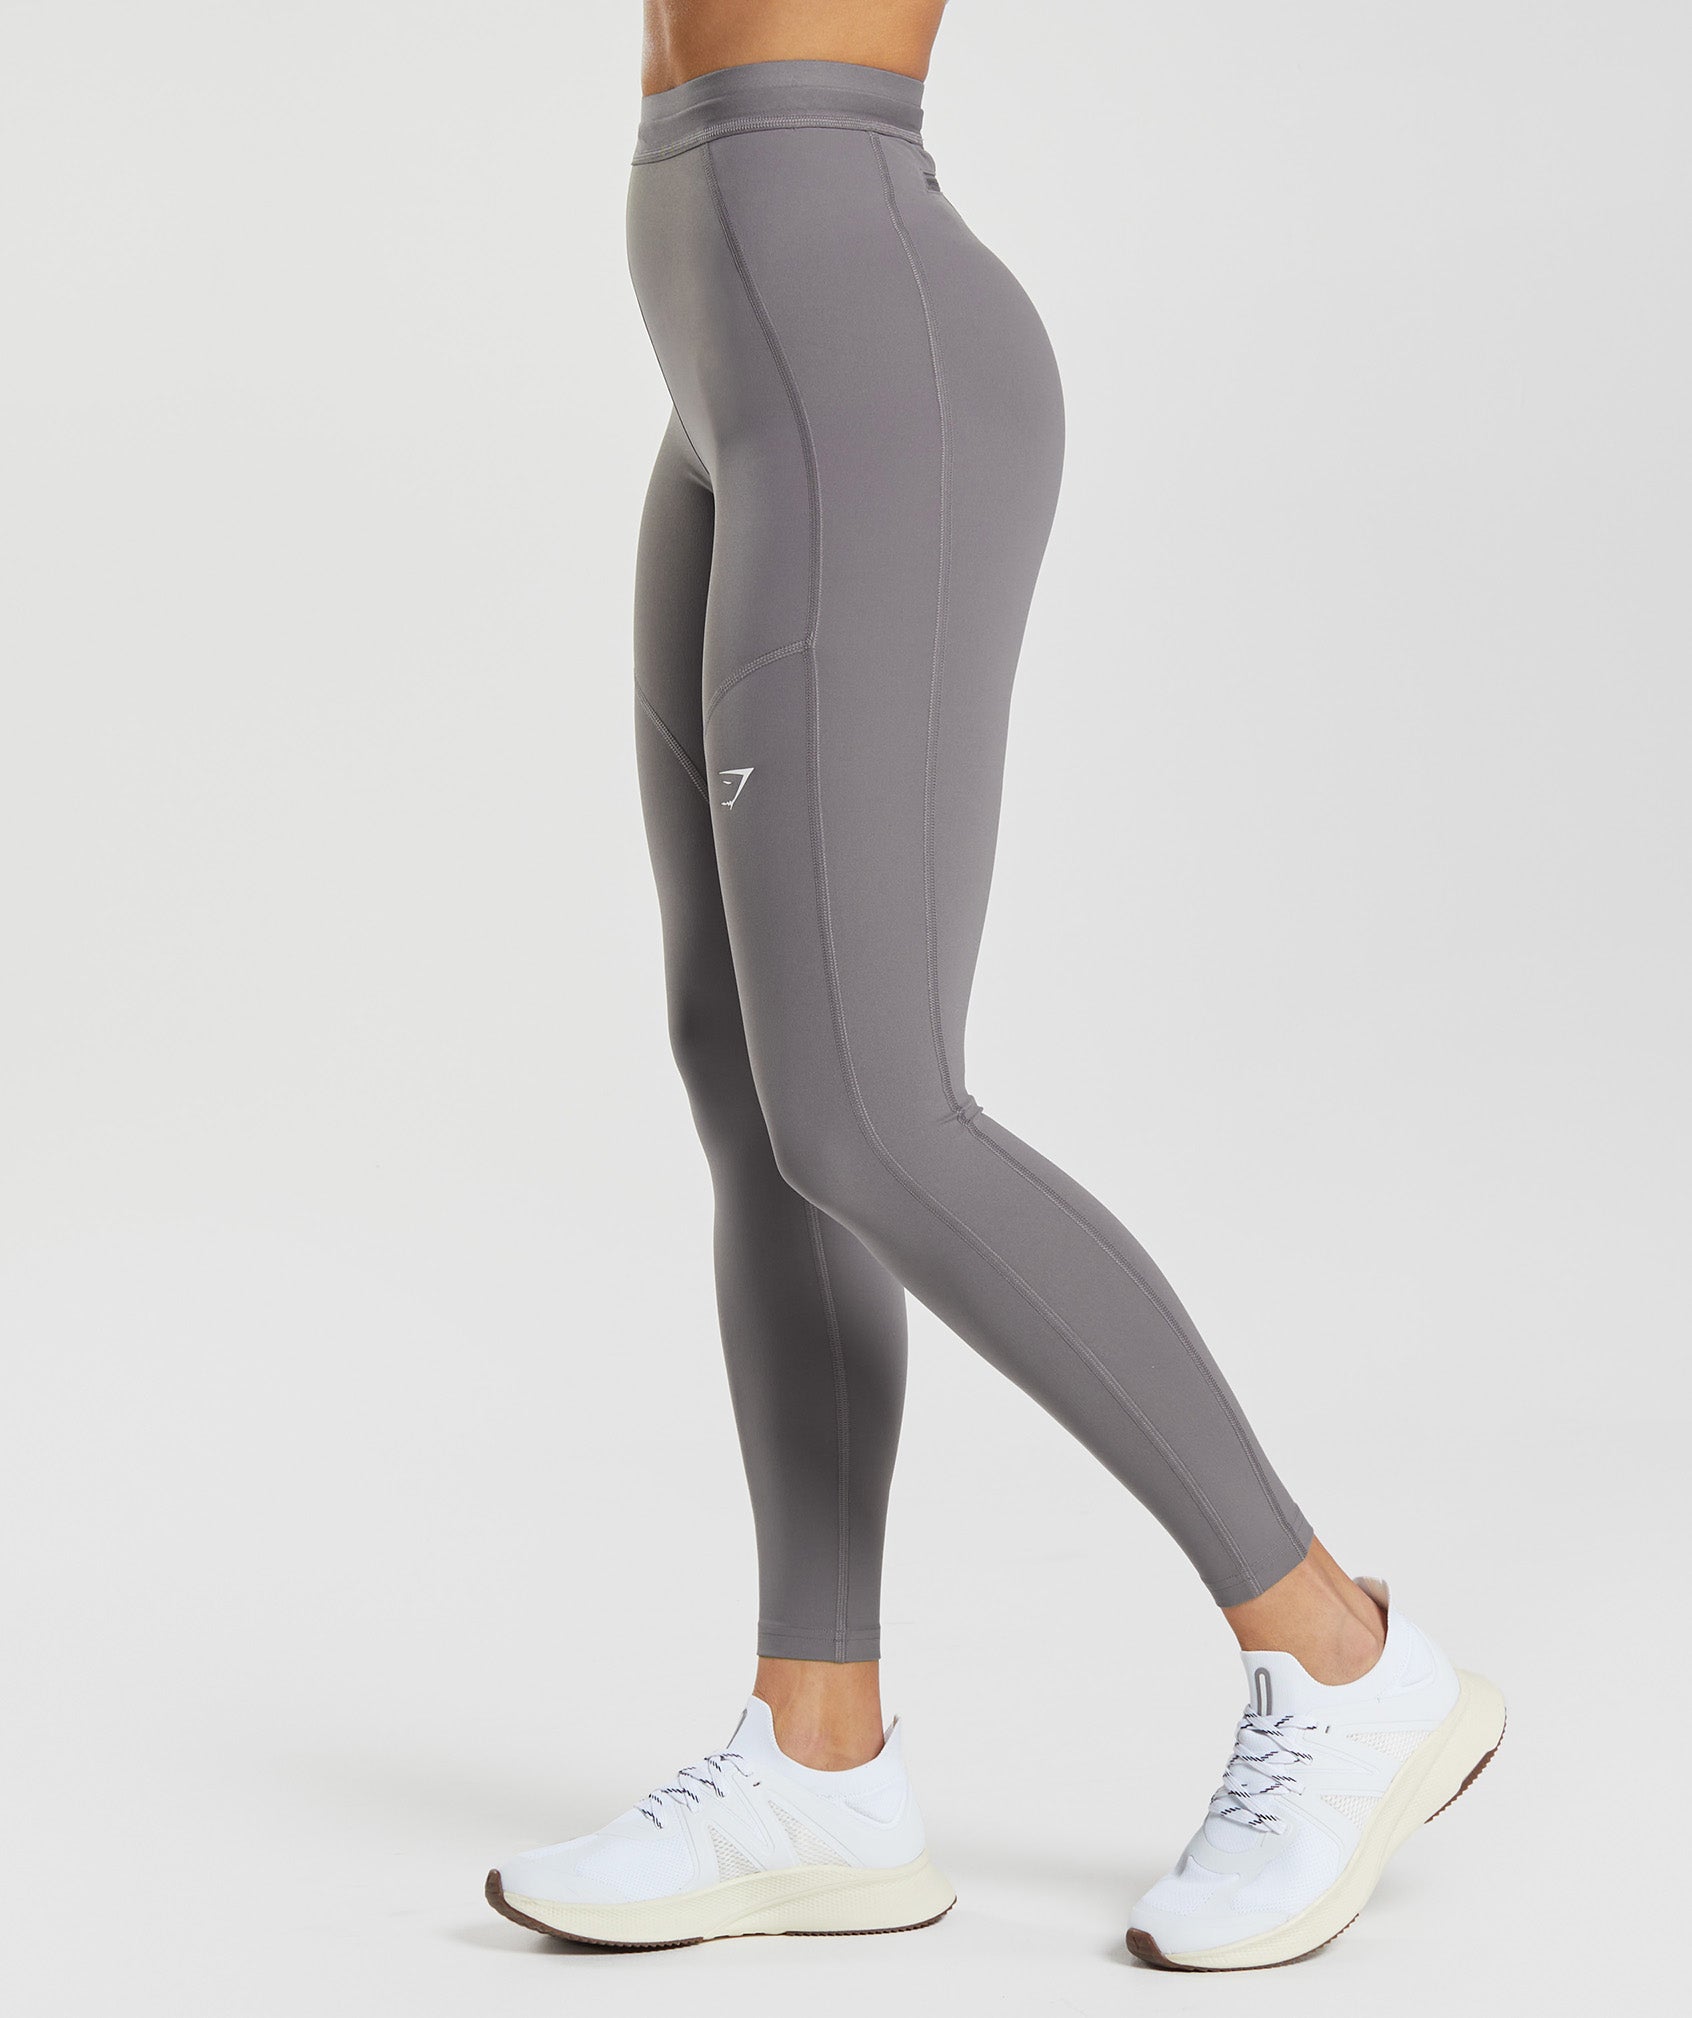 Sleek and Functional Dark Grey Gymshark Leggings with Pocket